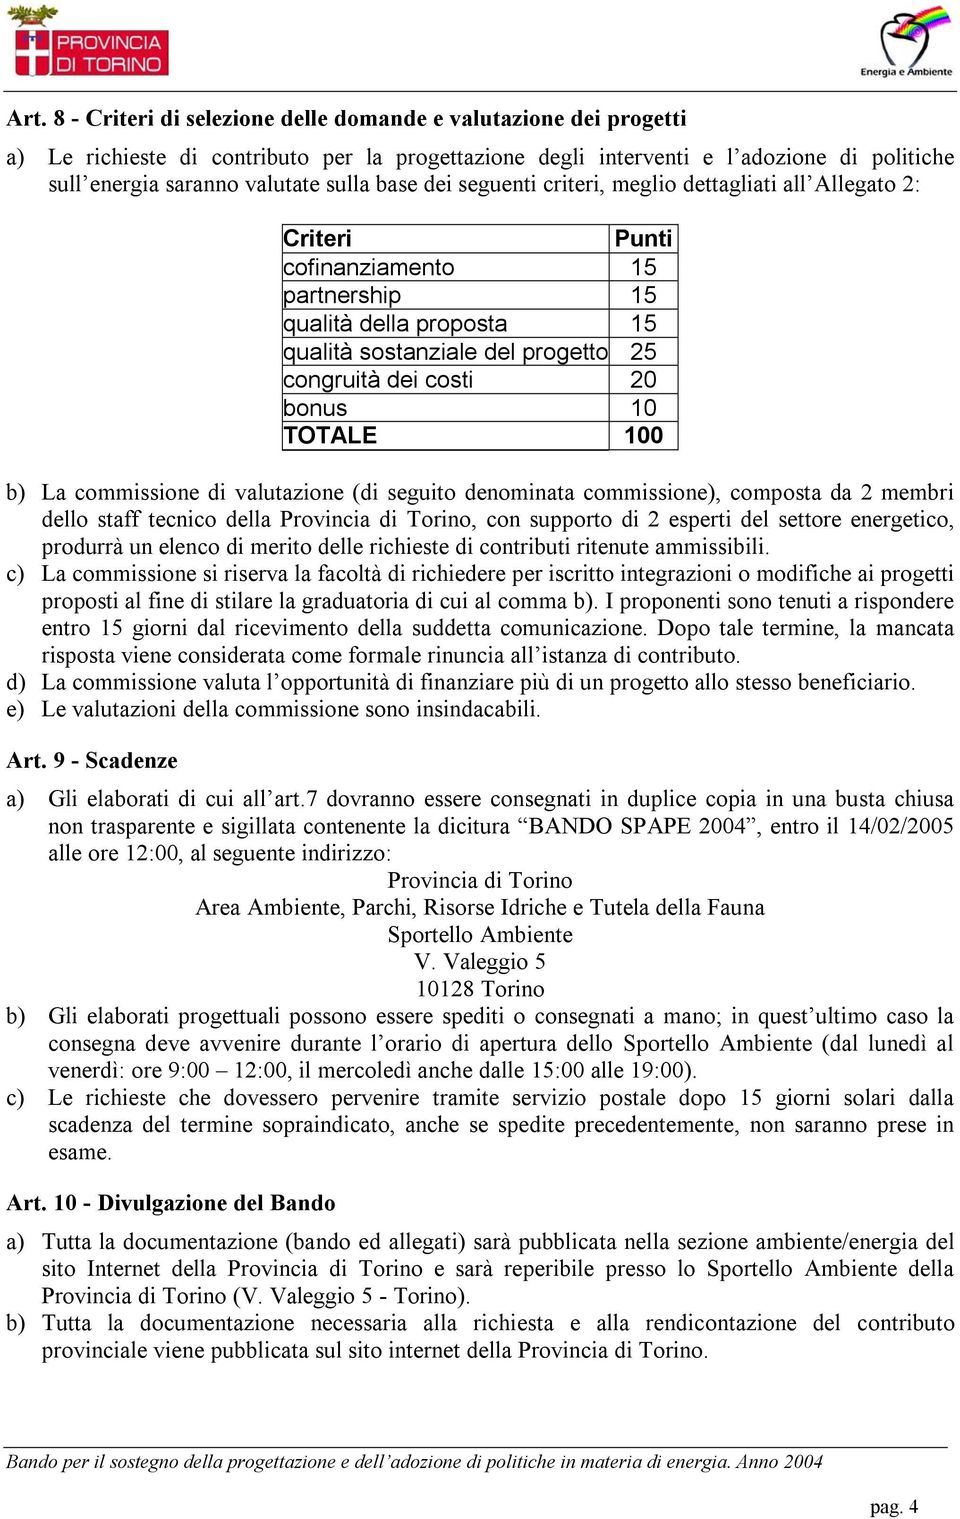 20 bonus 10 TOTALE 100 b) La commissione di valutazione (di seguito denominata commissione), composta da 2 membri dello staff tecnico della Provincia di Torino, con supporto di 2 esperti del settore